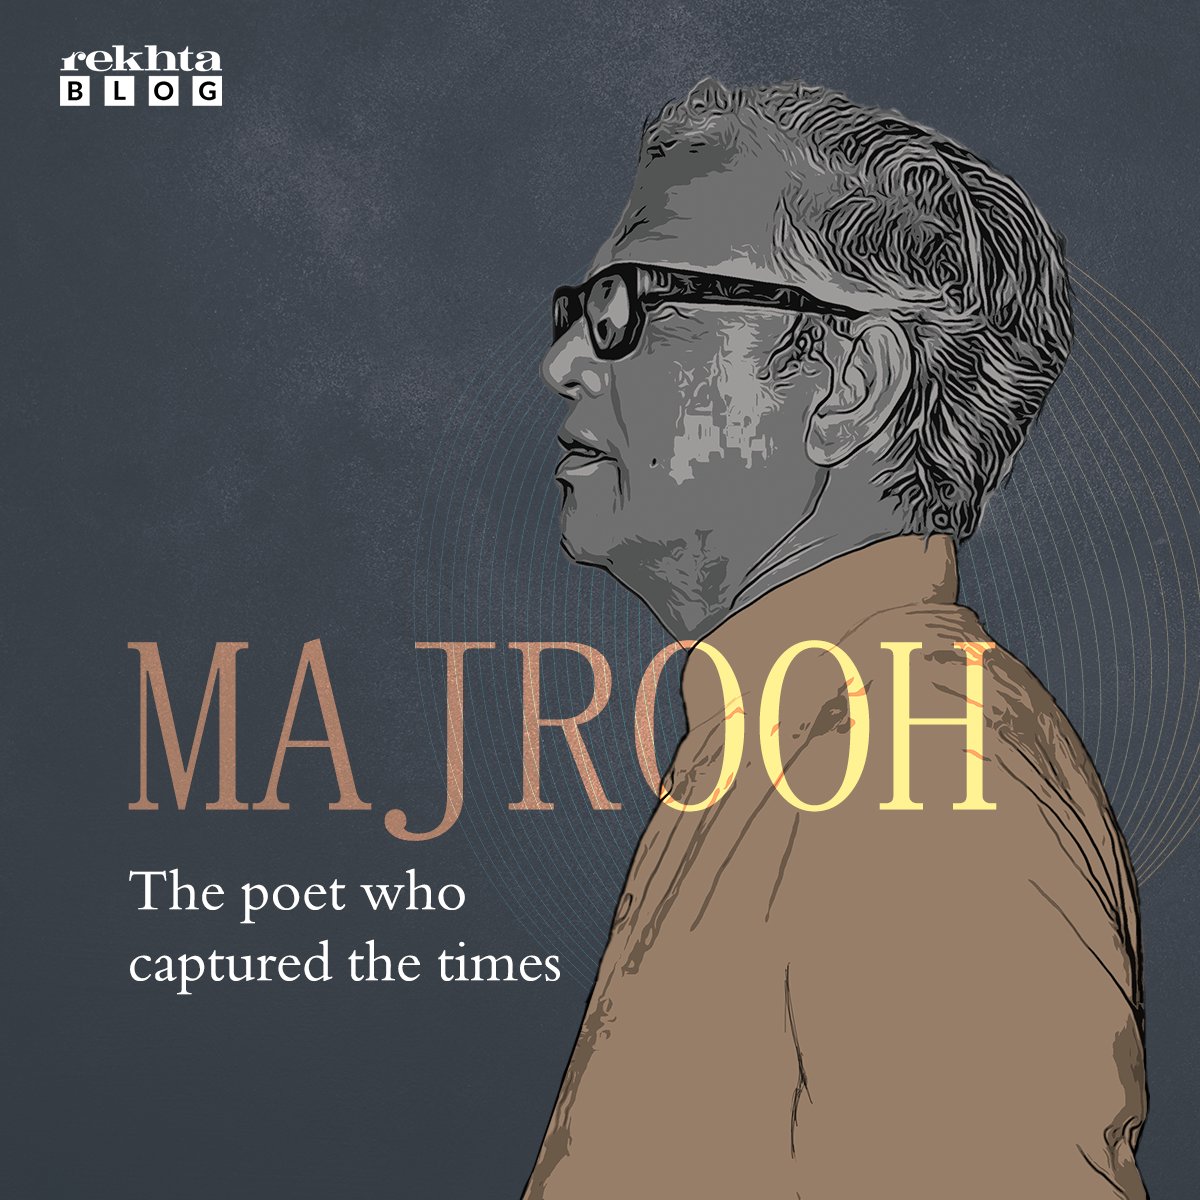 Read here : blog.rekhta.org/majrooh-the-po…

#MajroohSultanpuri#RekhtaBlog